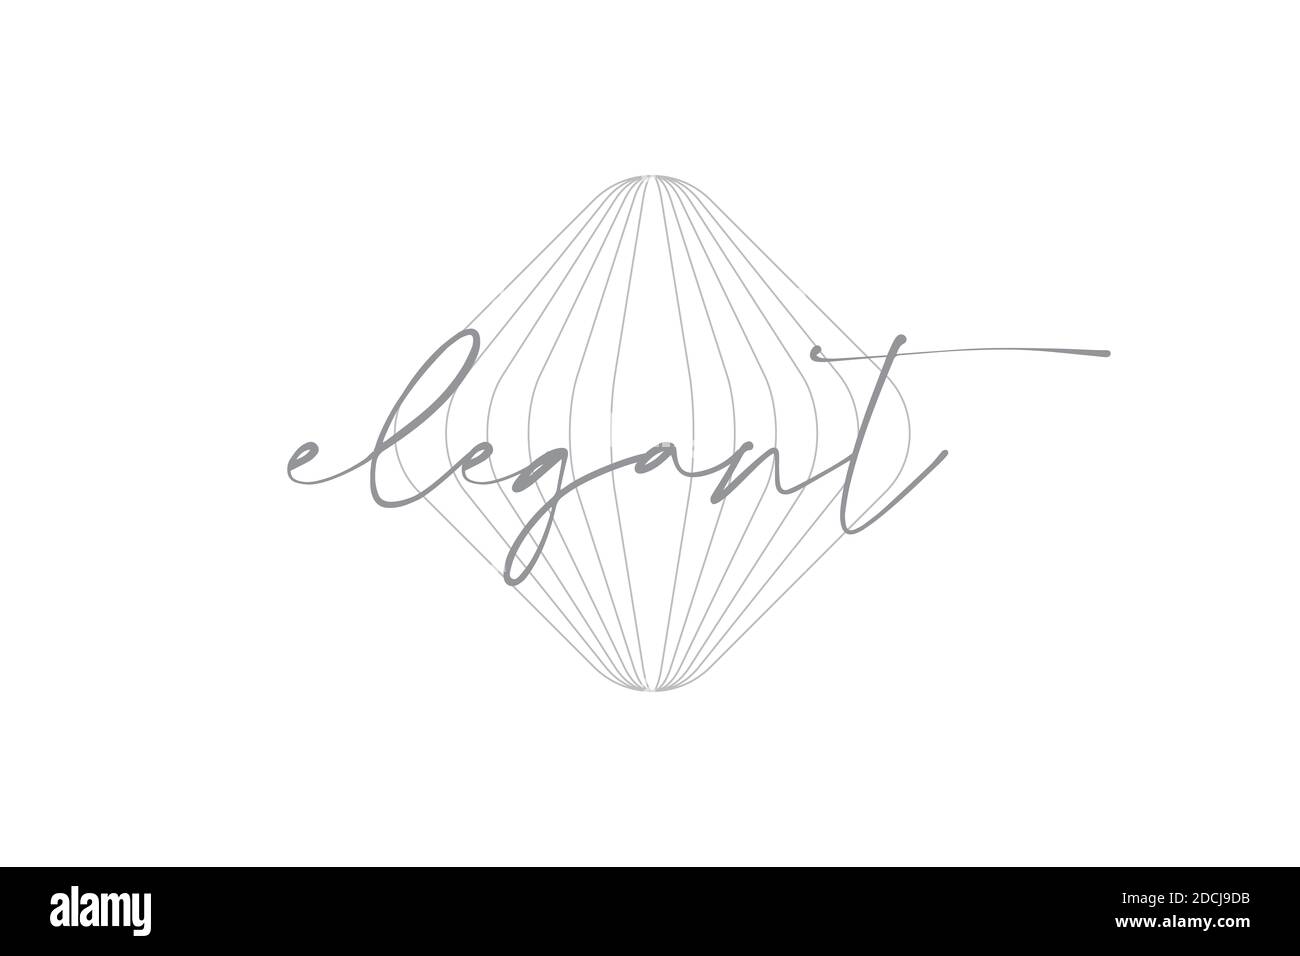 Einfaches, modernes Grafikdesign eines Wortes "elegant" mit rhomboidaler geometrischer Form mit wiederholten Linien in grauer Farbe. Handschriftlich, kalligraphisch Stockfoto